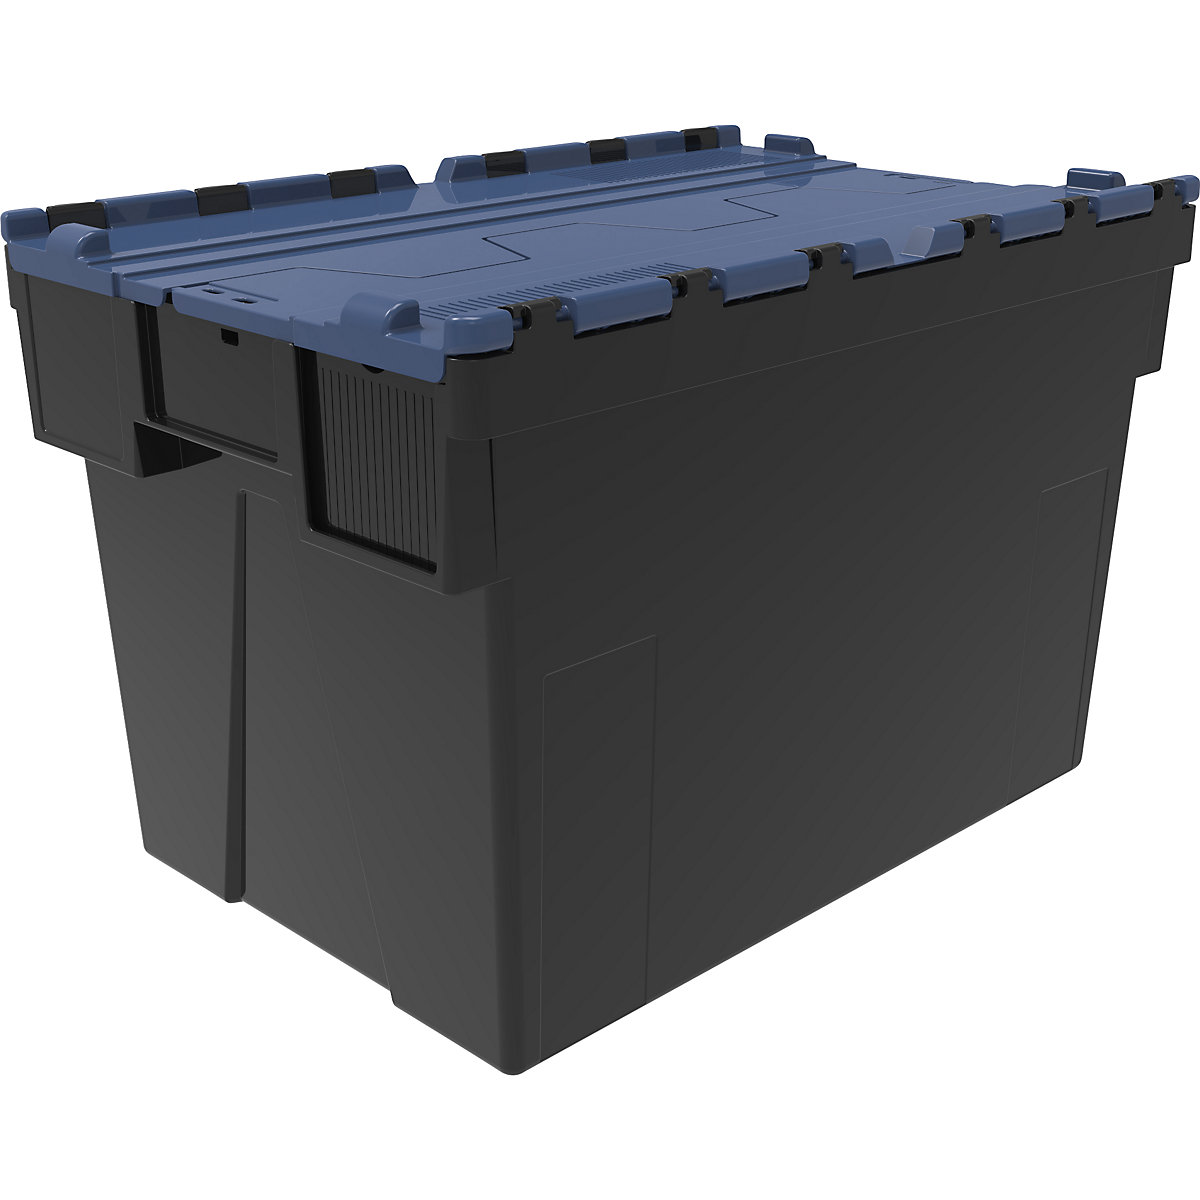 Többször használható rakásolható tároló, h x szé x ma 600 x 400 x 400 mm, cs. e. 5 db, fekete színben, kék fedéllel